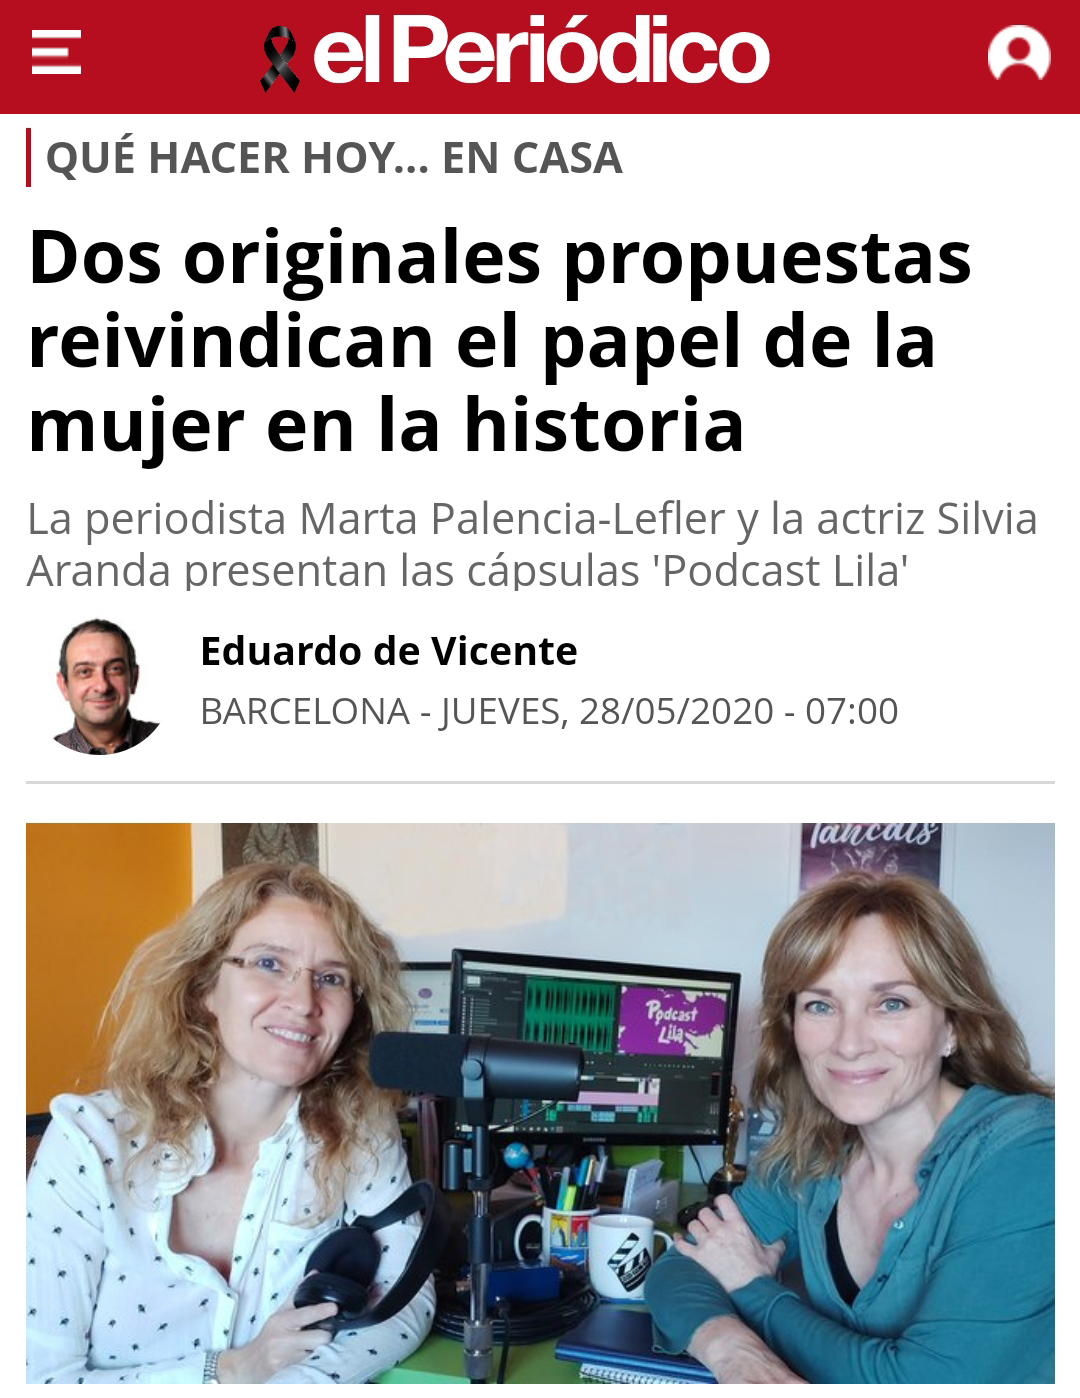 Podcast Lila en el diario El Periódico